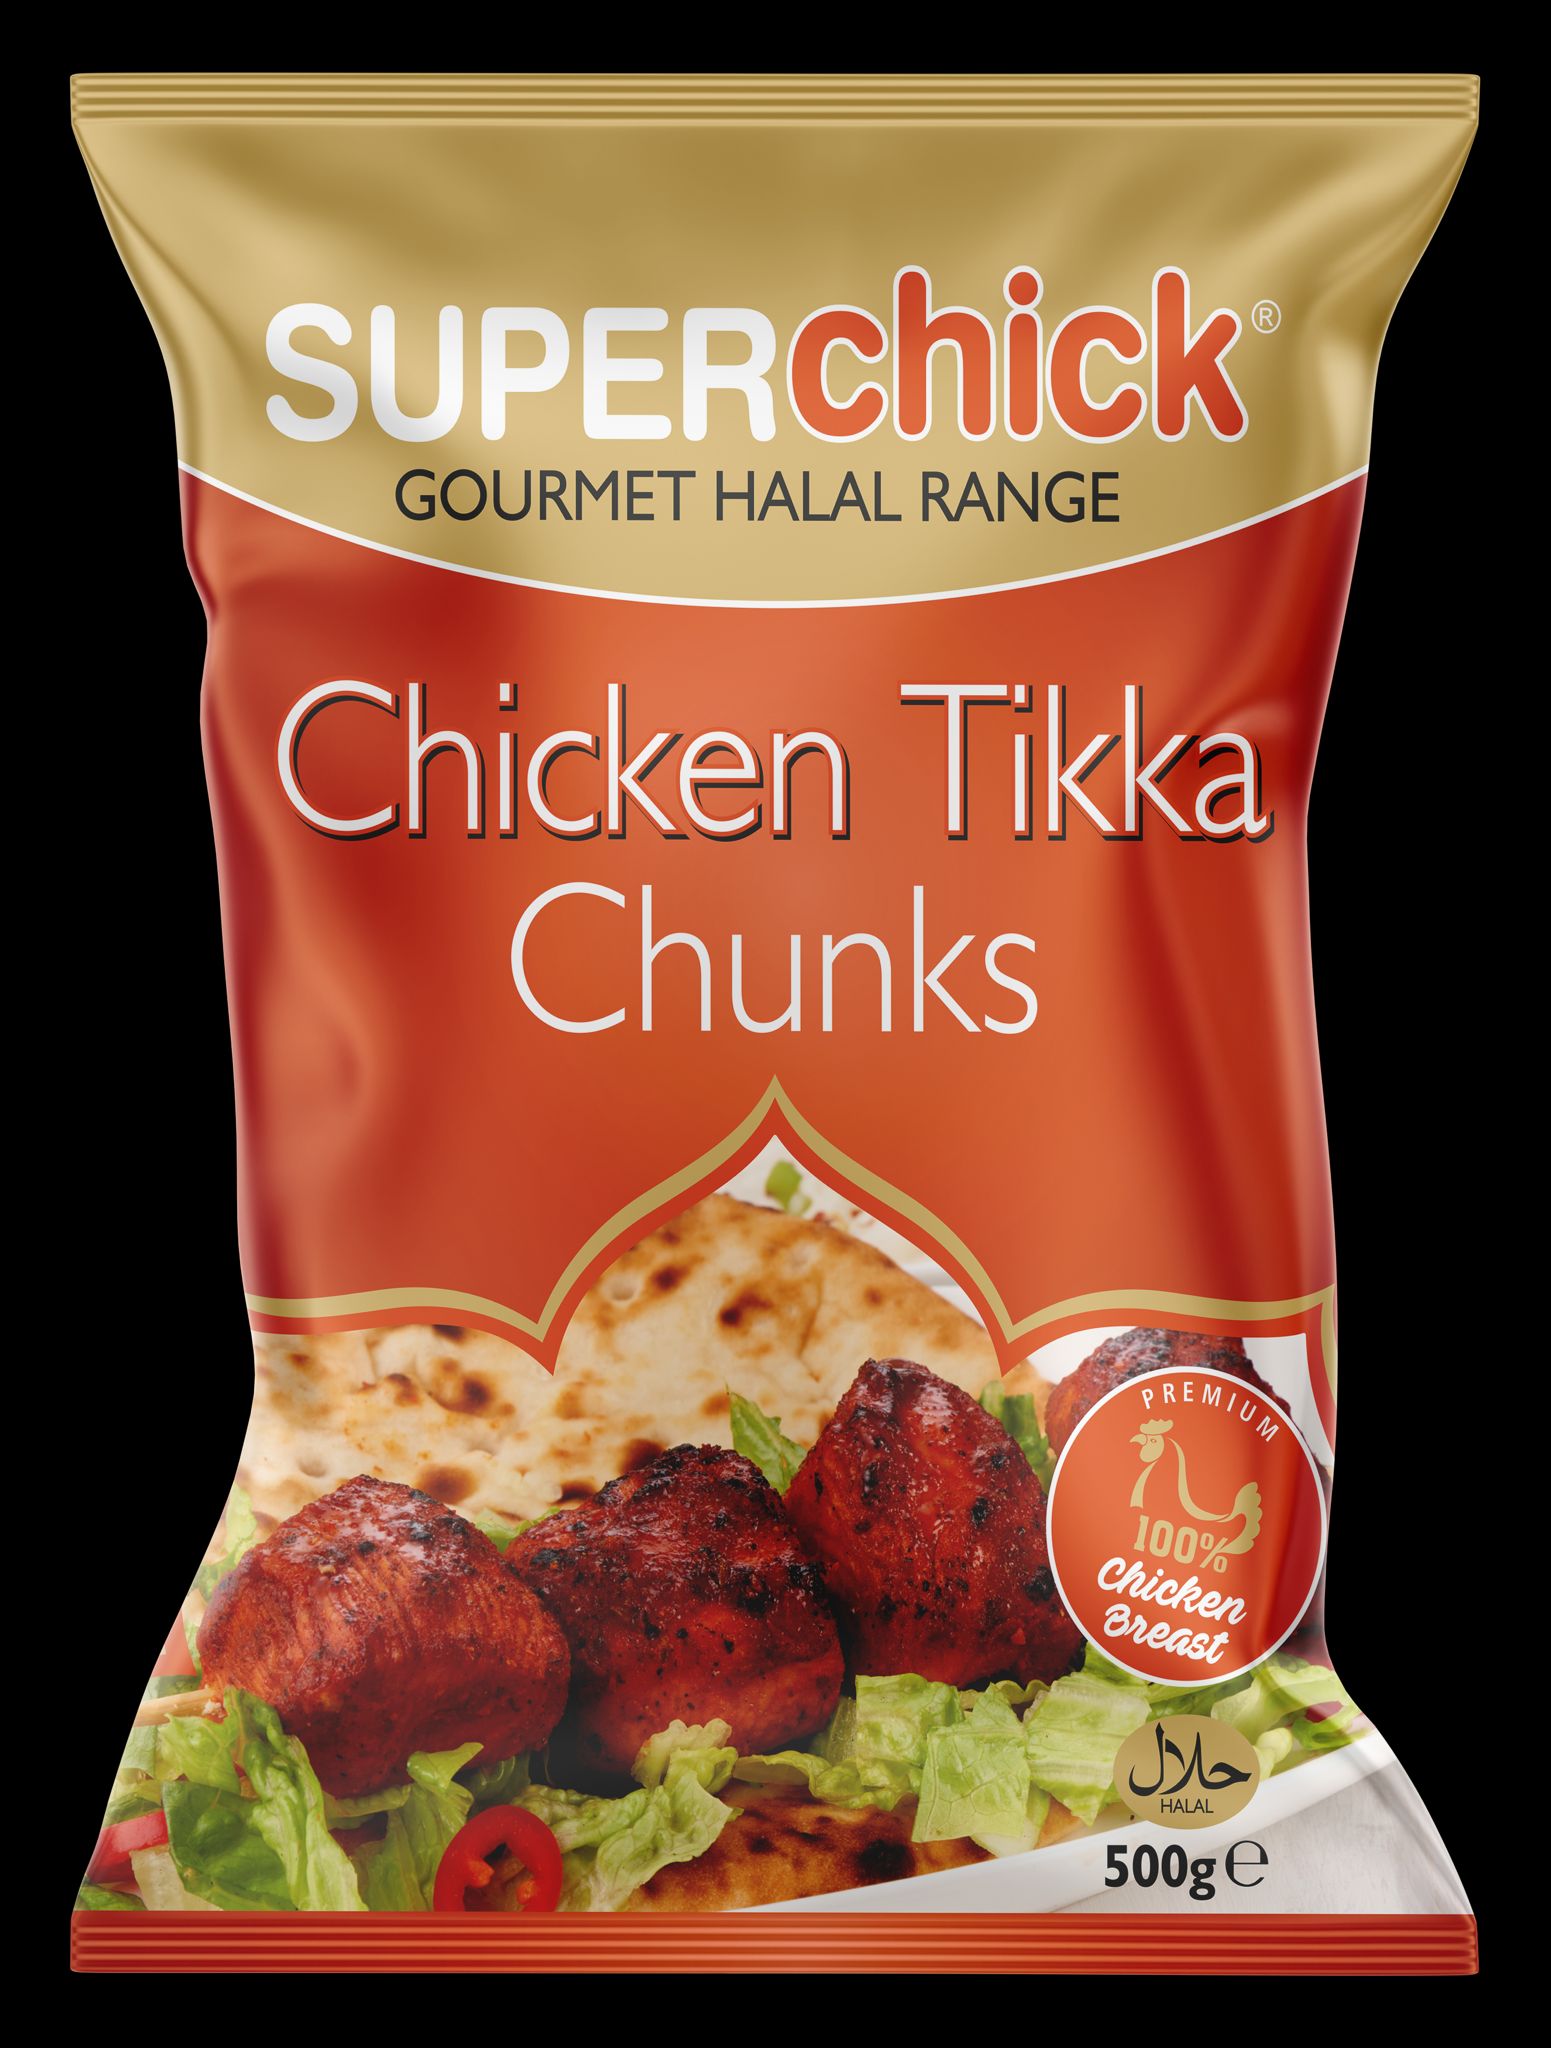 Superchick Chicken Breast Tikka Chunks (500g)